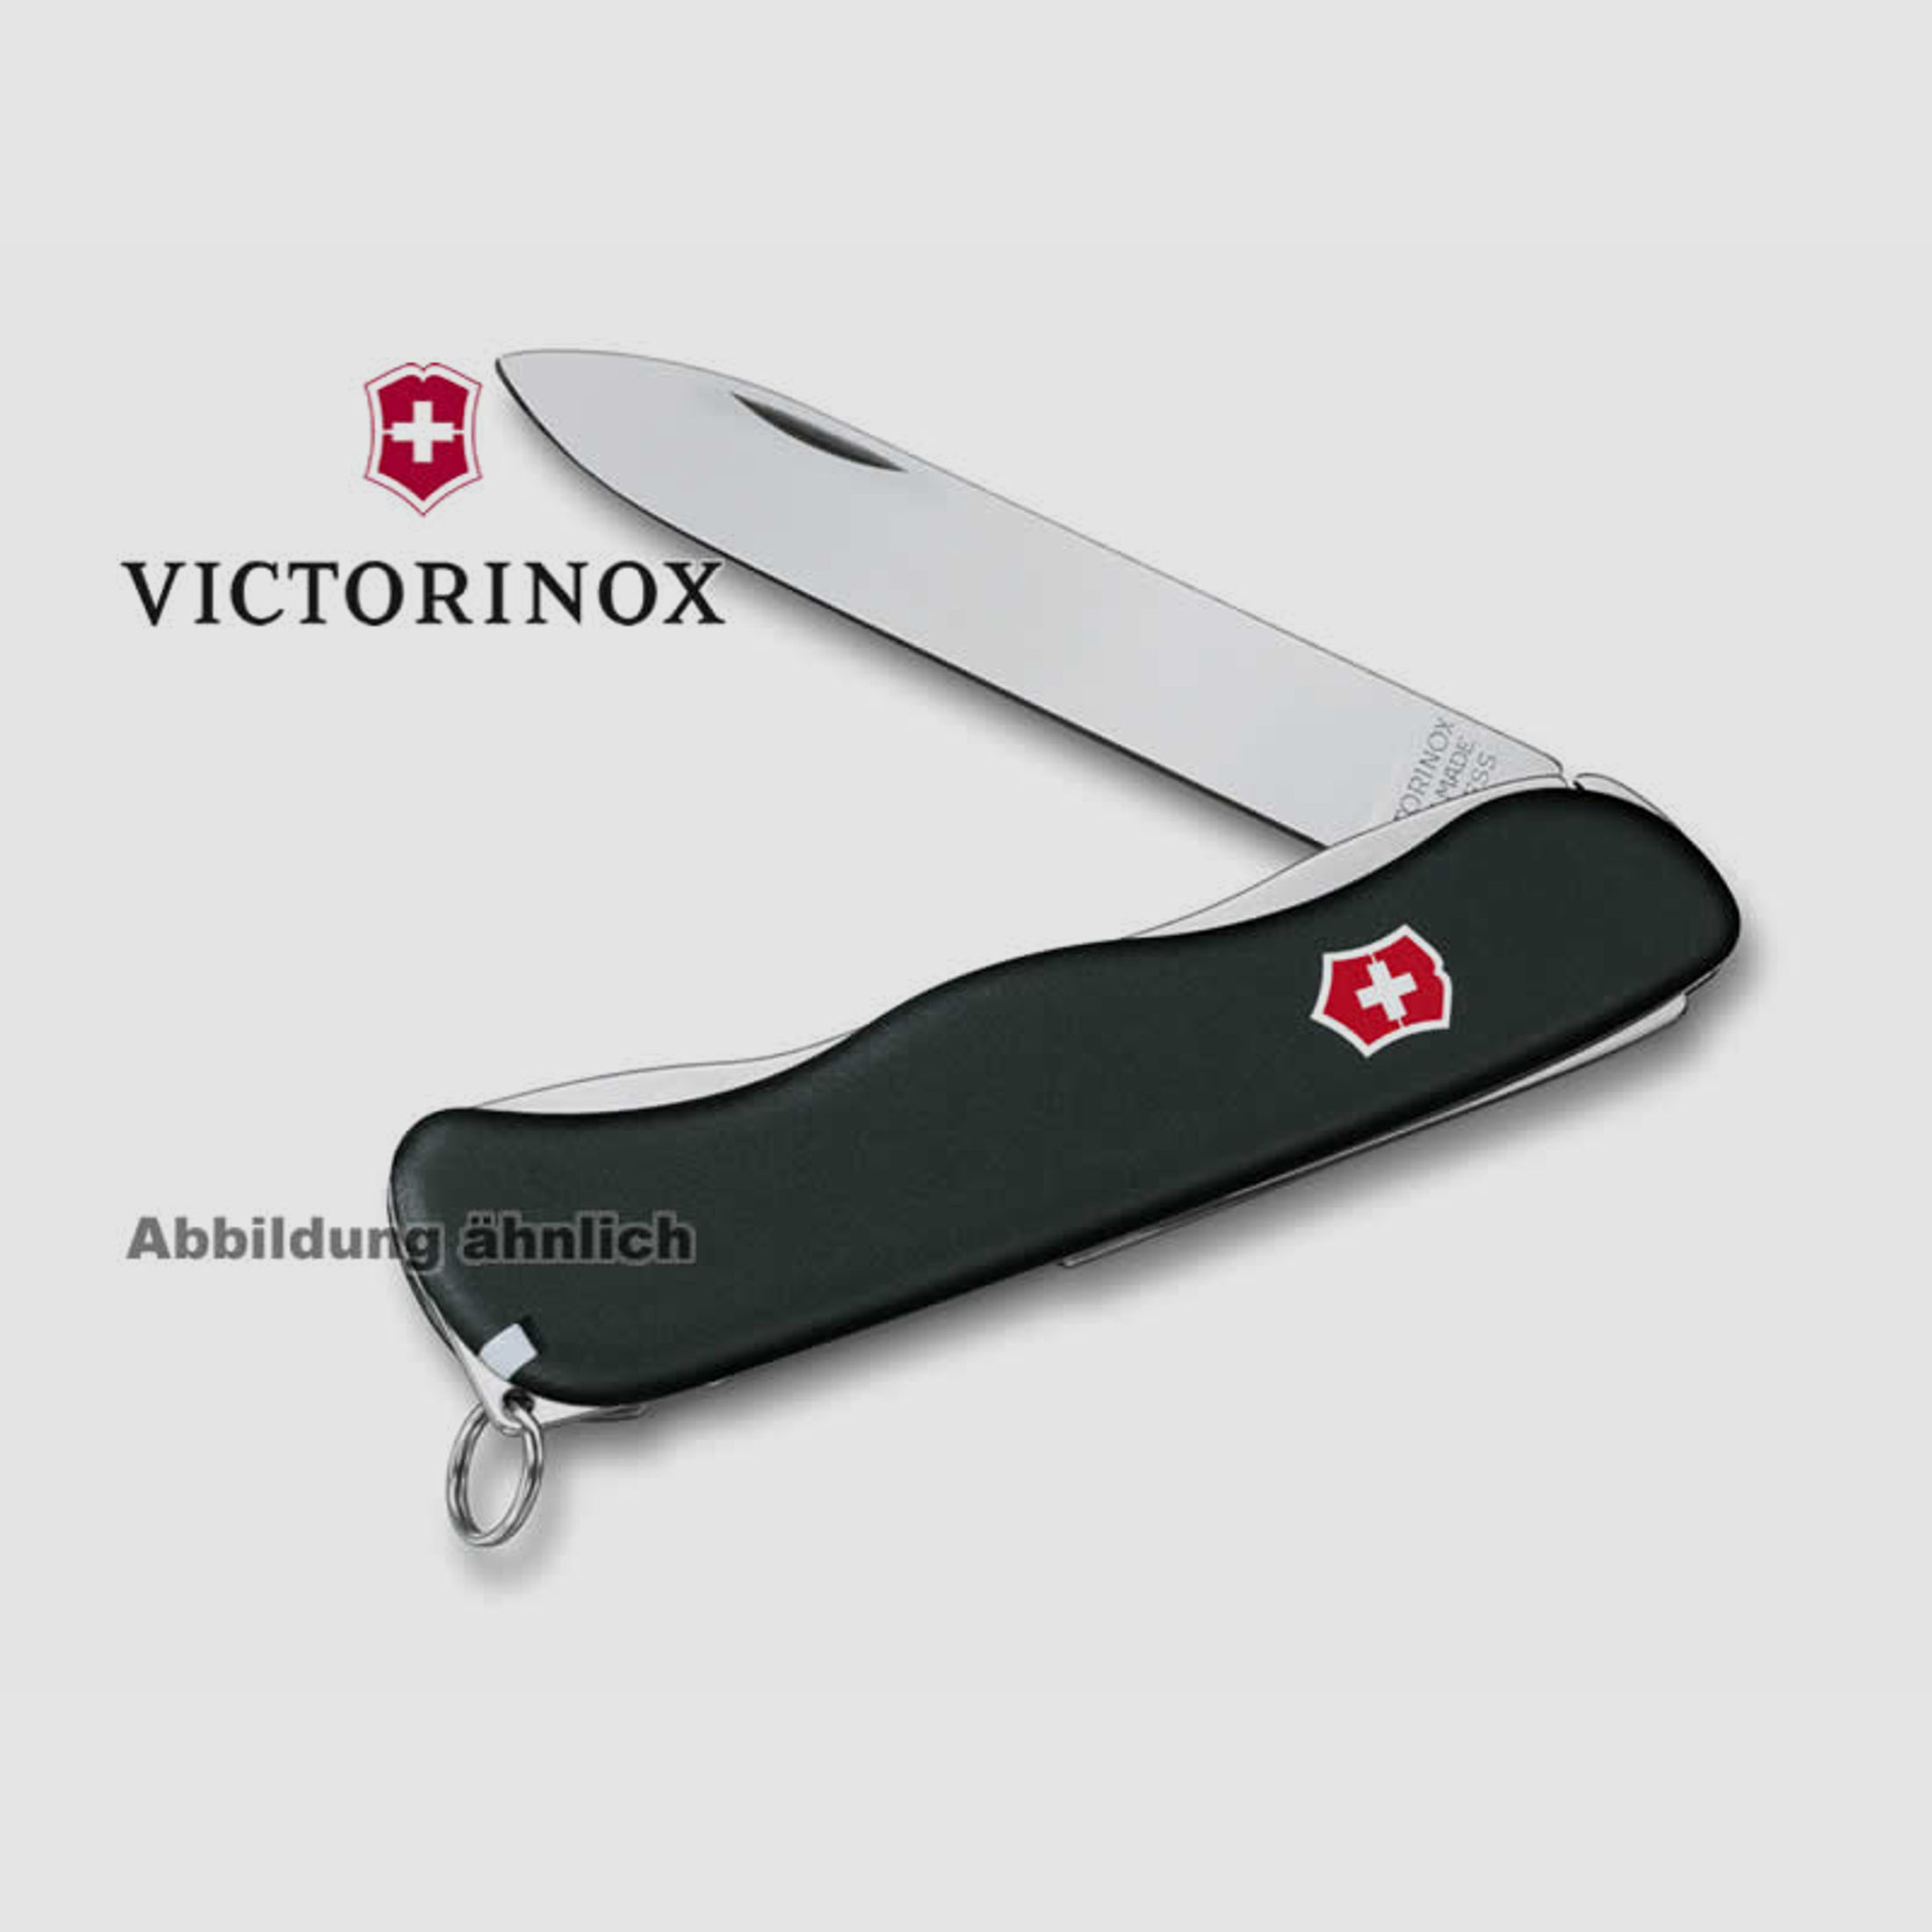 VICTORINOX Feststellmesser SENTINEL, 111 mm, 4 Funktionen, Schweizer Taschenmesser